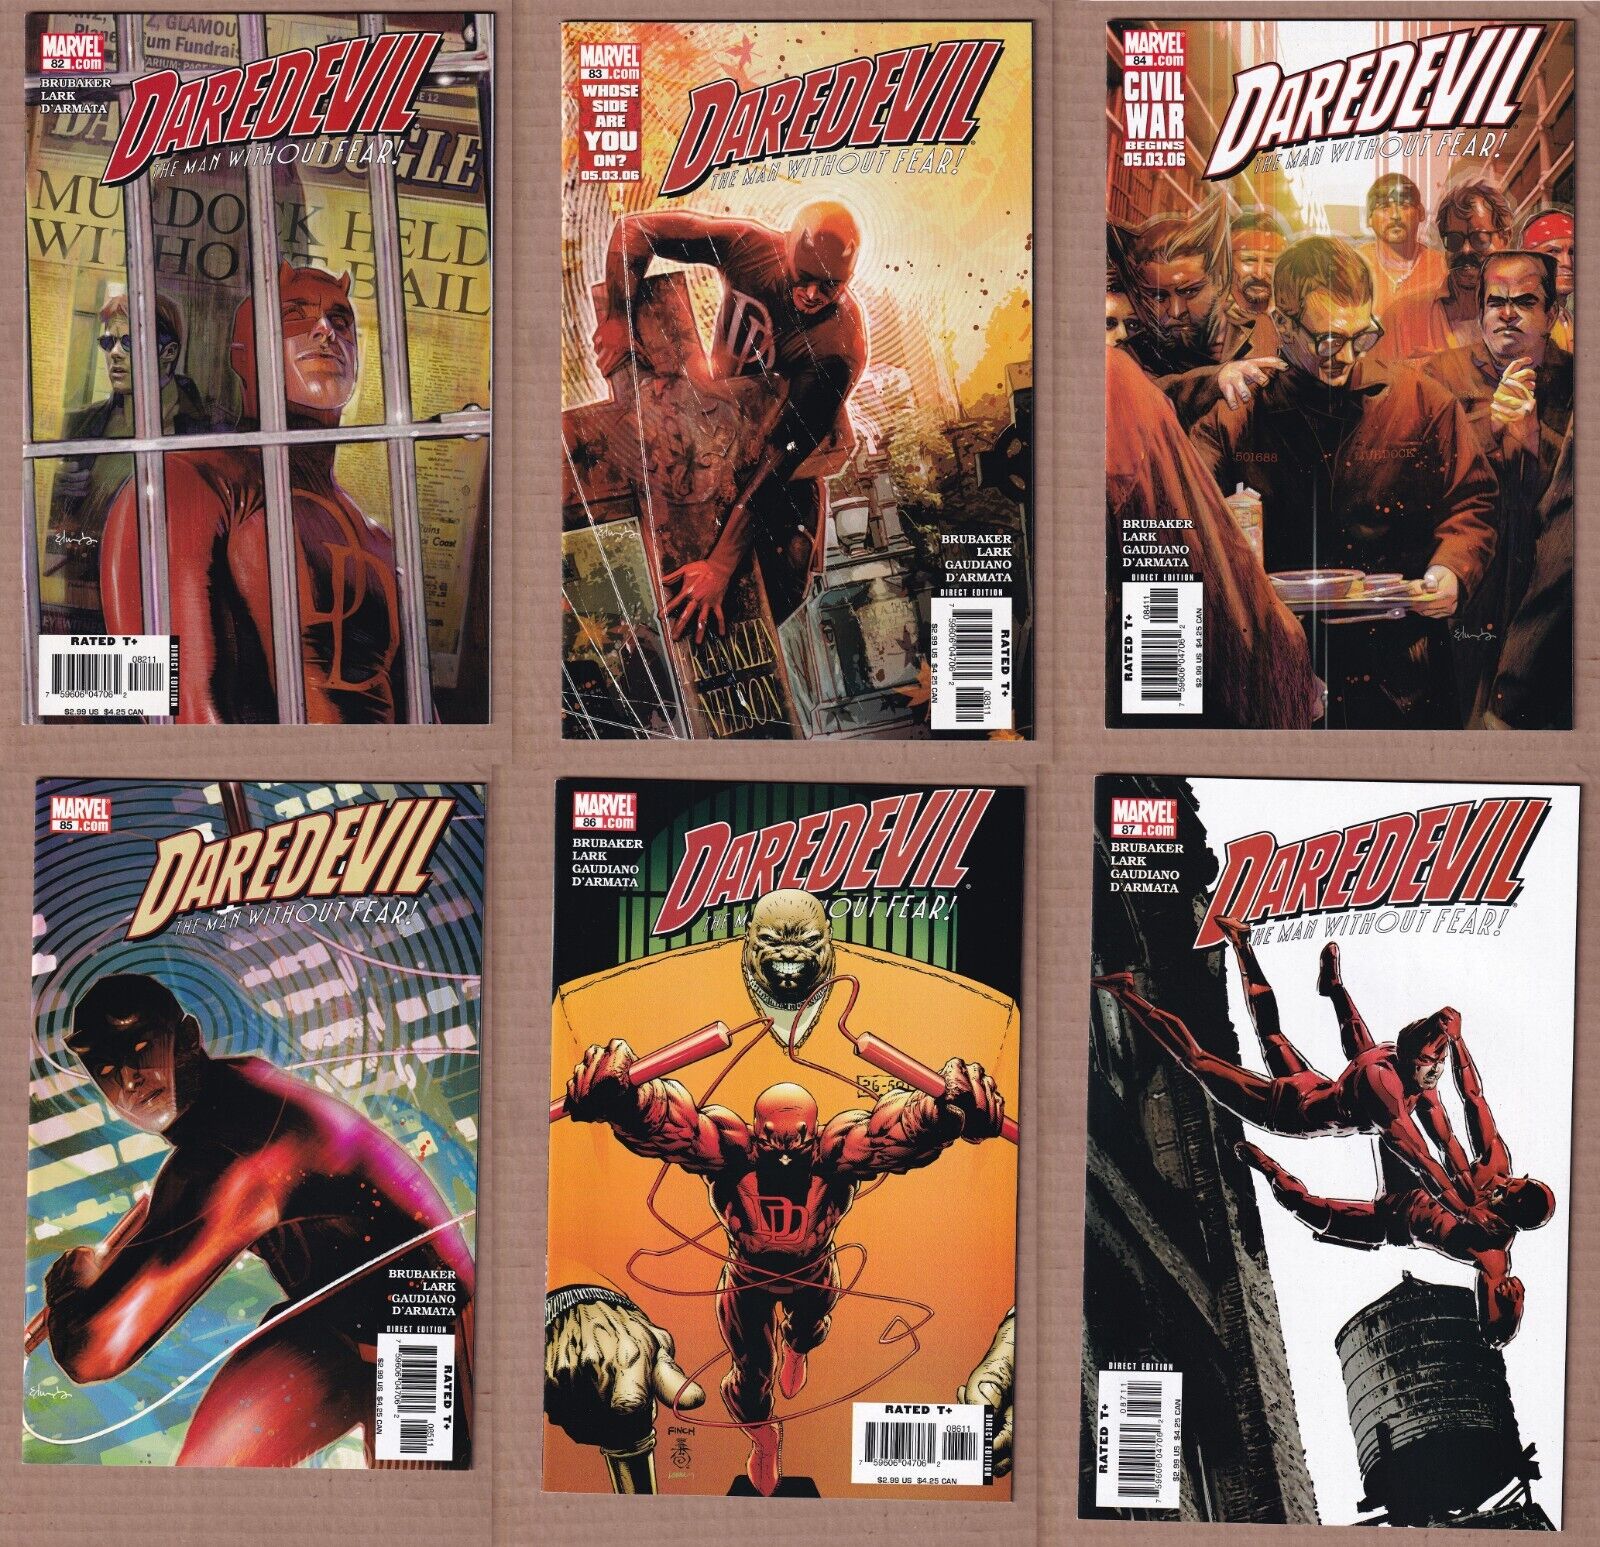 Daredevil 82-87 (Marvel, Ed Brubaker, Michael Lark, 2006) 6 issues